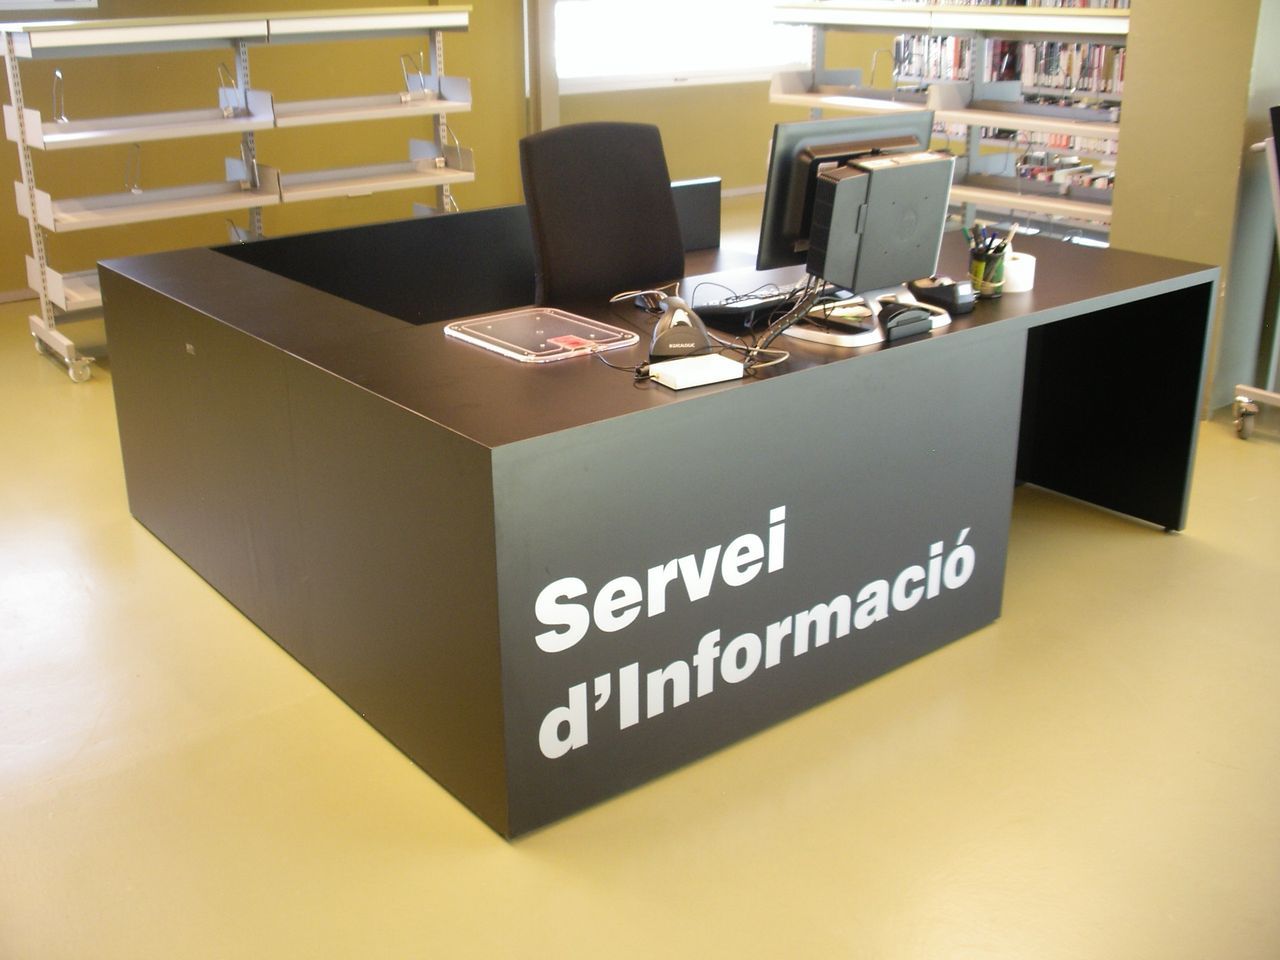 Biblioteca del Fondo – Santa Coloma de Gramanet (Barcelona)